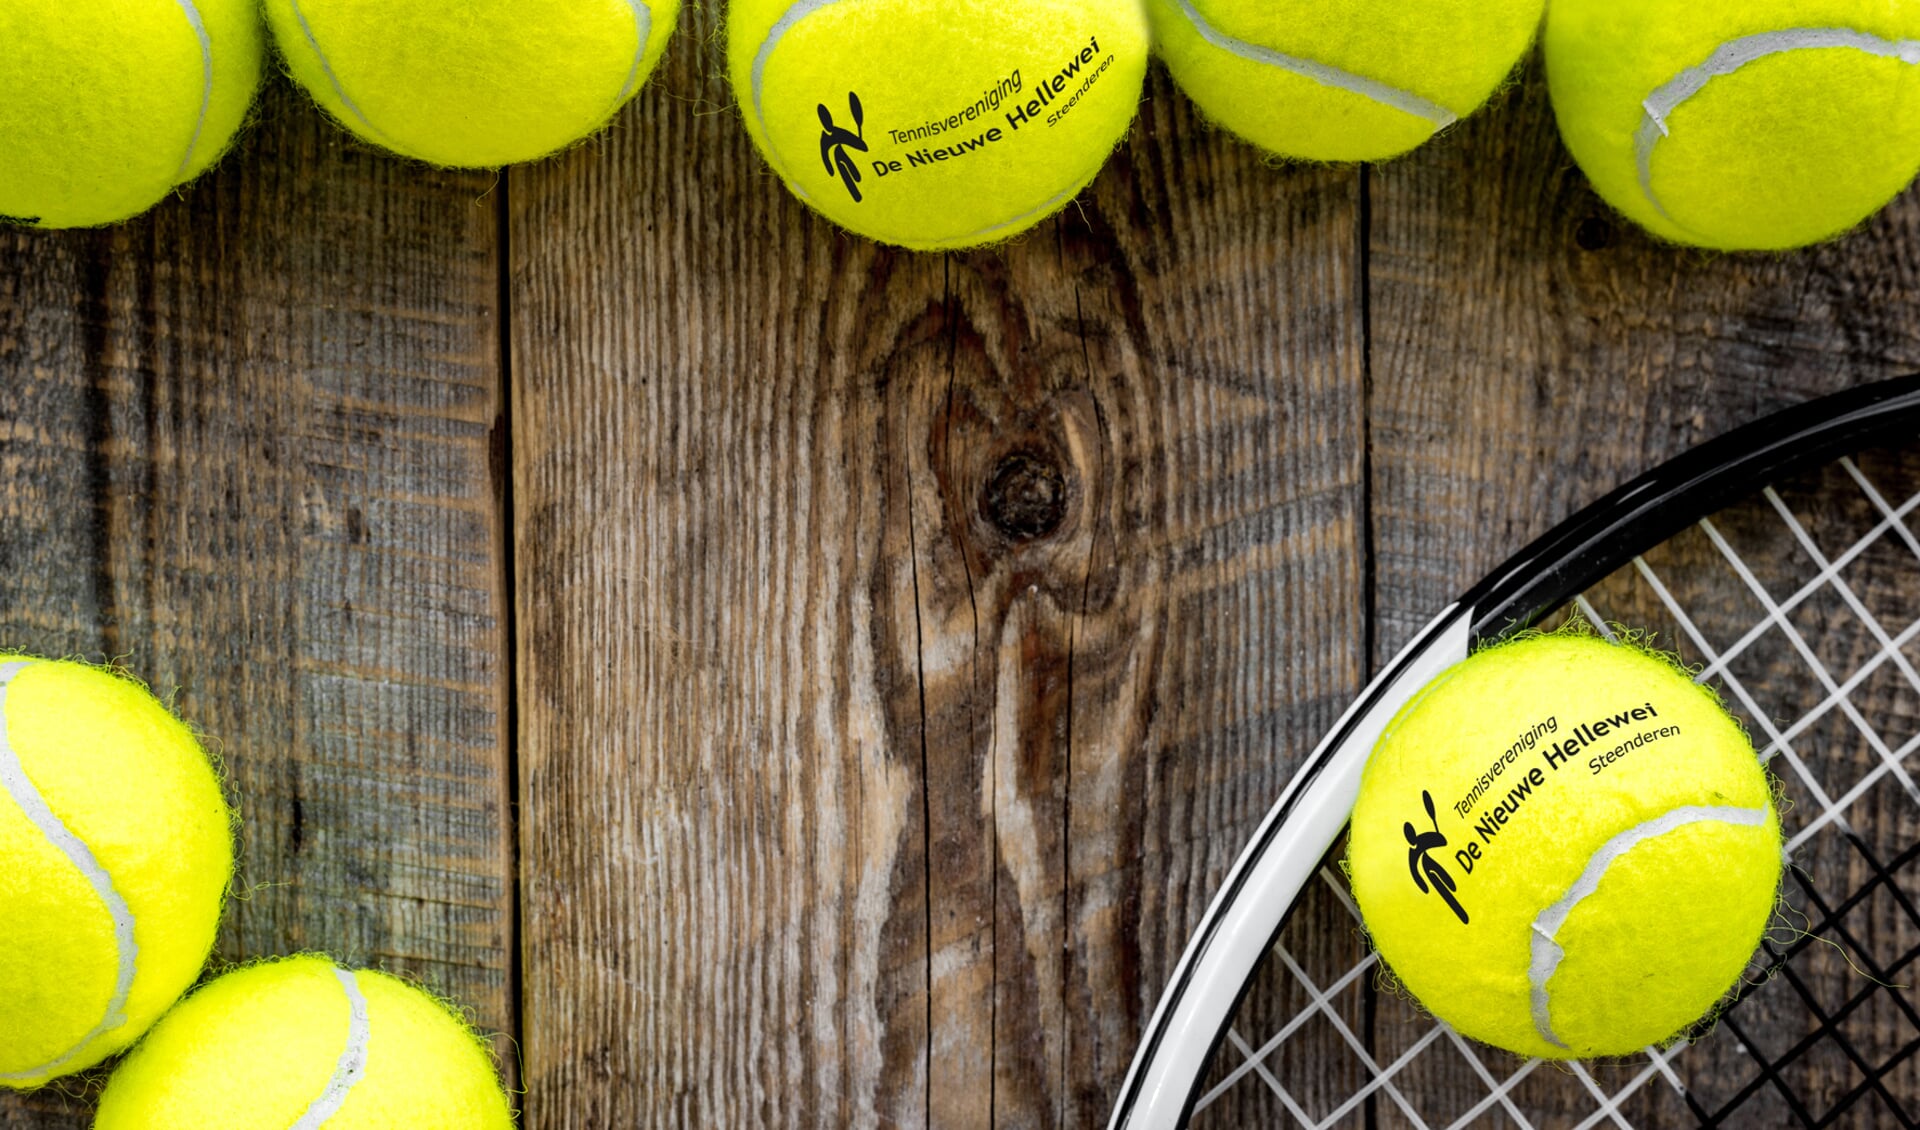 Tennistoernooi. Foto: PR